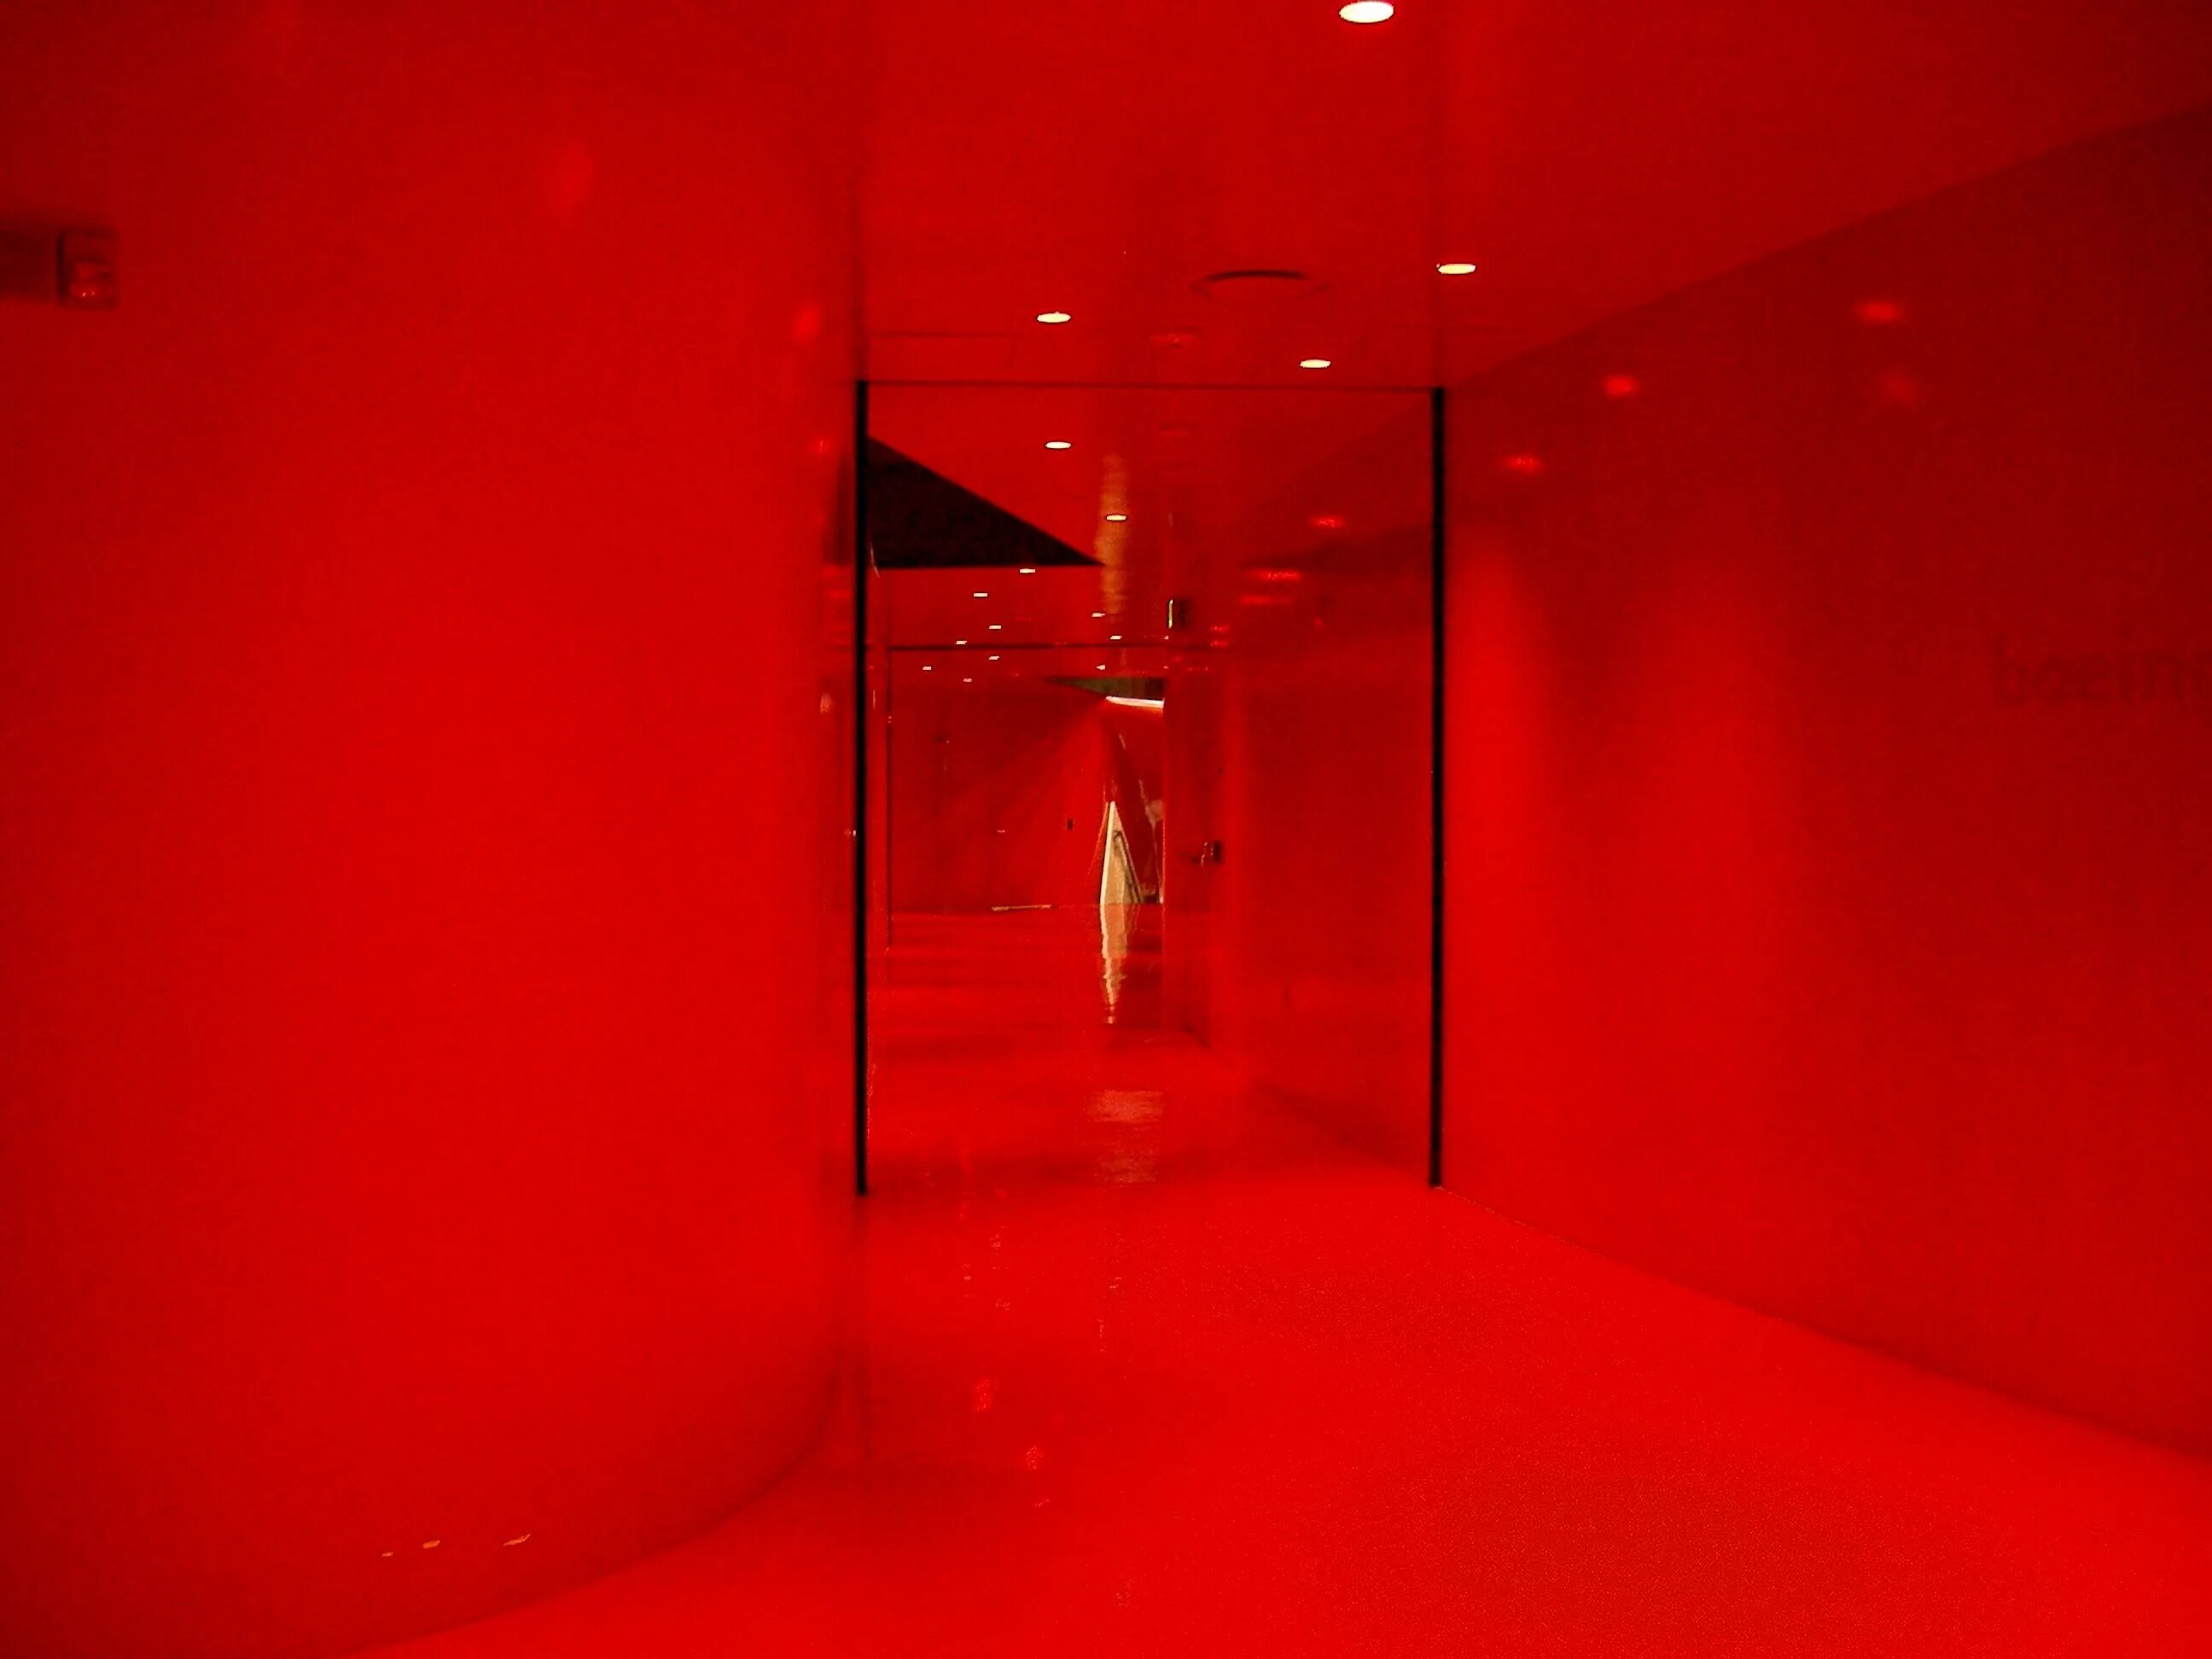 Red Room" красная комната  (1999) ужасы ". Красная комната редрум даркнет. Комната с красной подсветкой. Красное освещение в комнате. Красная комн